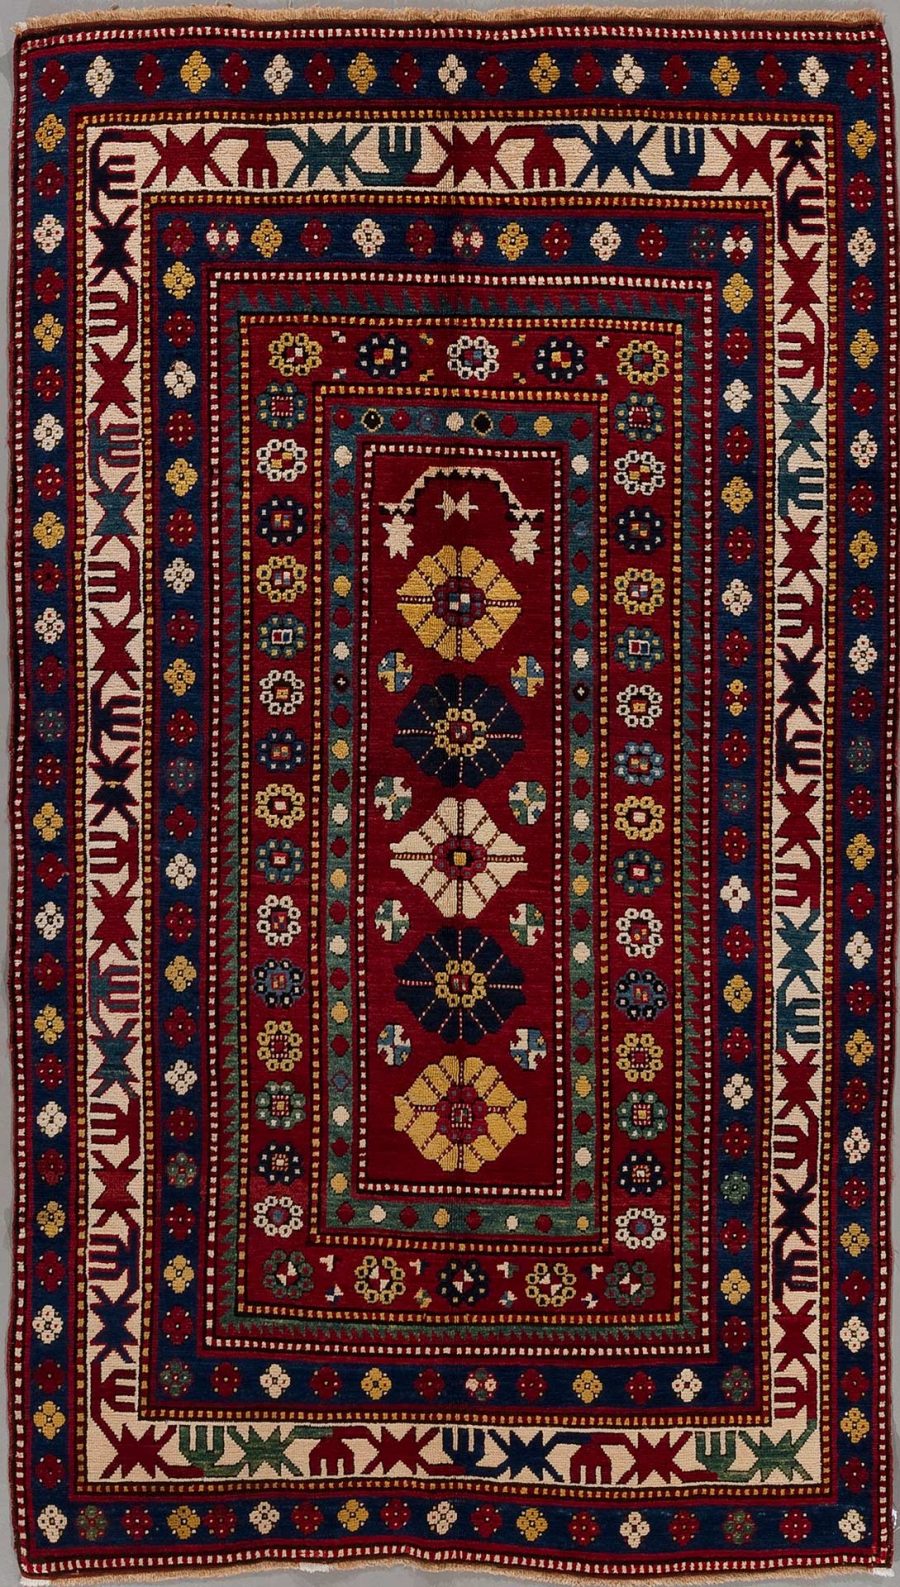 Traditioneller handgeknüpfter Teppich mit komplexen geometrischen und floralen Mustern in Rot, Blau, Beige und anderen Farben, umrandet von dekorativen Bordüren mit Tier- und Pflanzenmotiven.